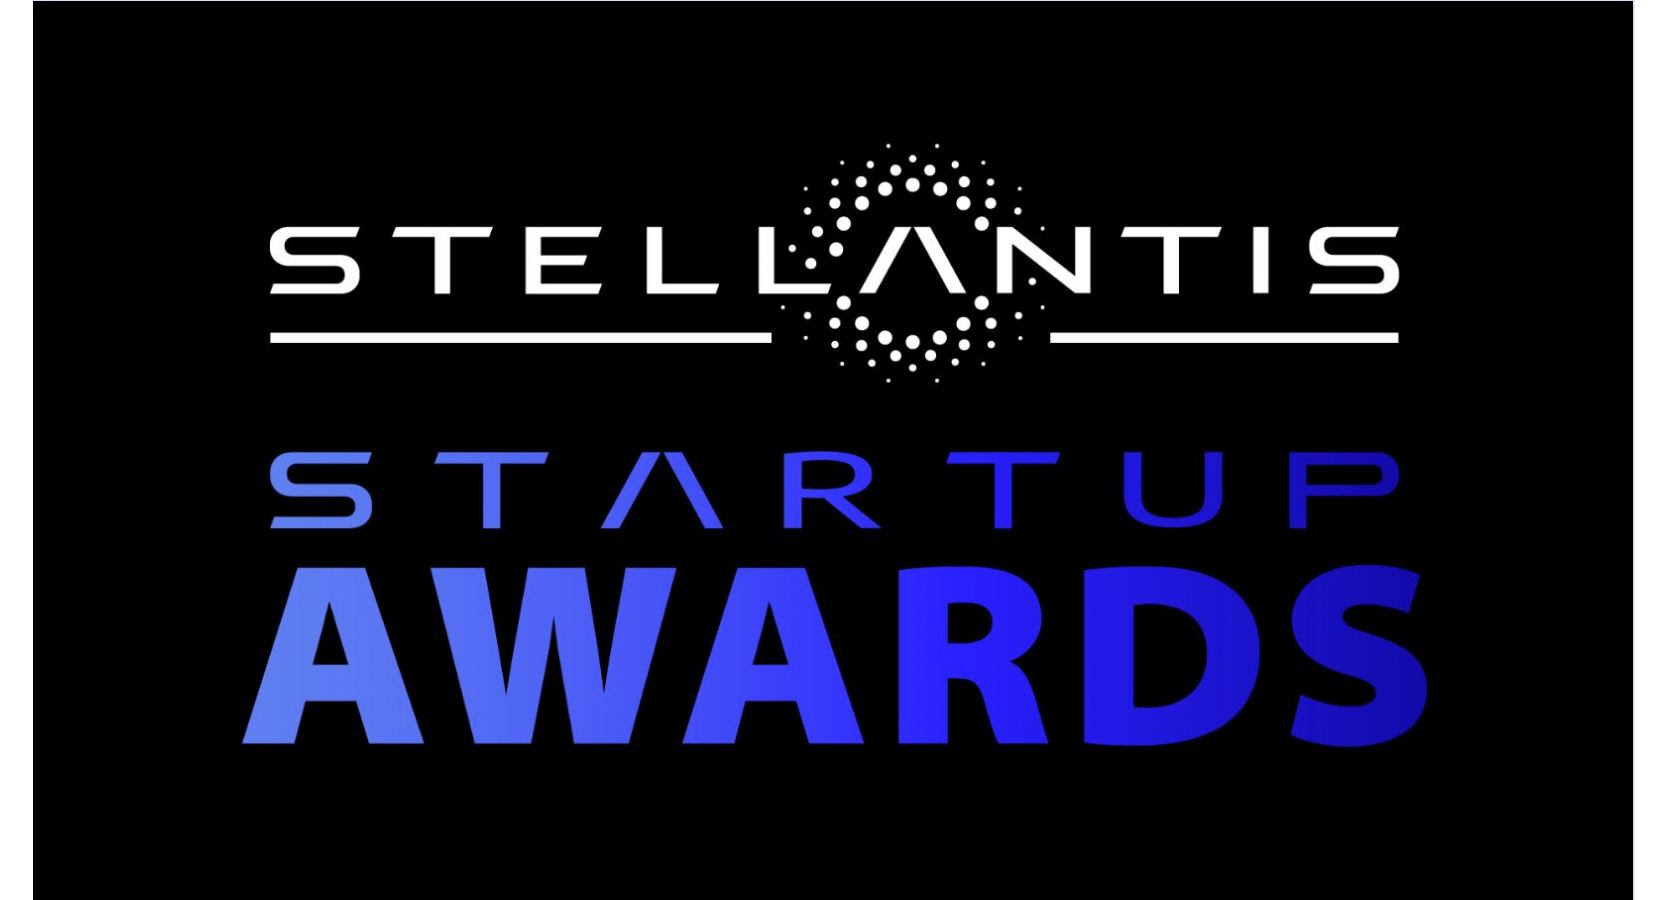 Los Stellantis ‘Startup Awards’ reconocen a siete asociaciones e innovaciones tecnológicas de alto rendimiento